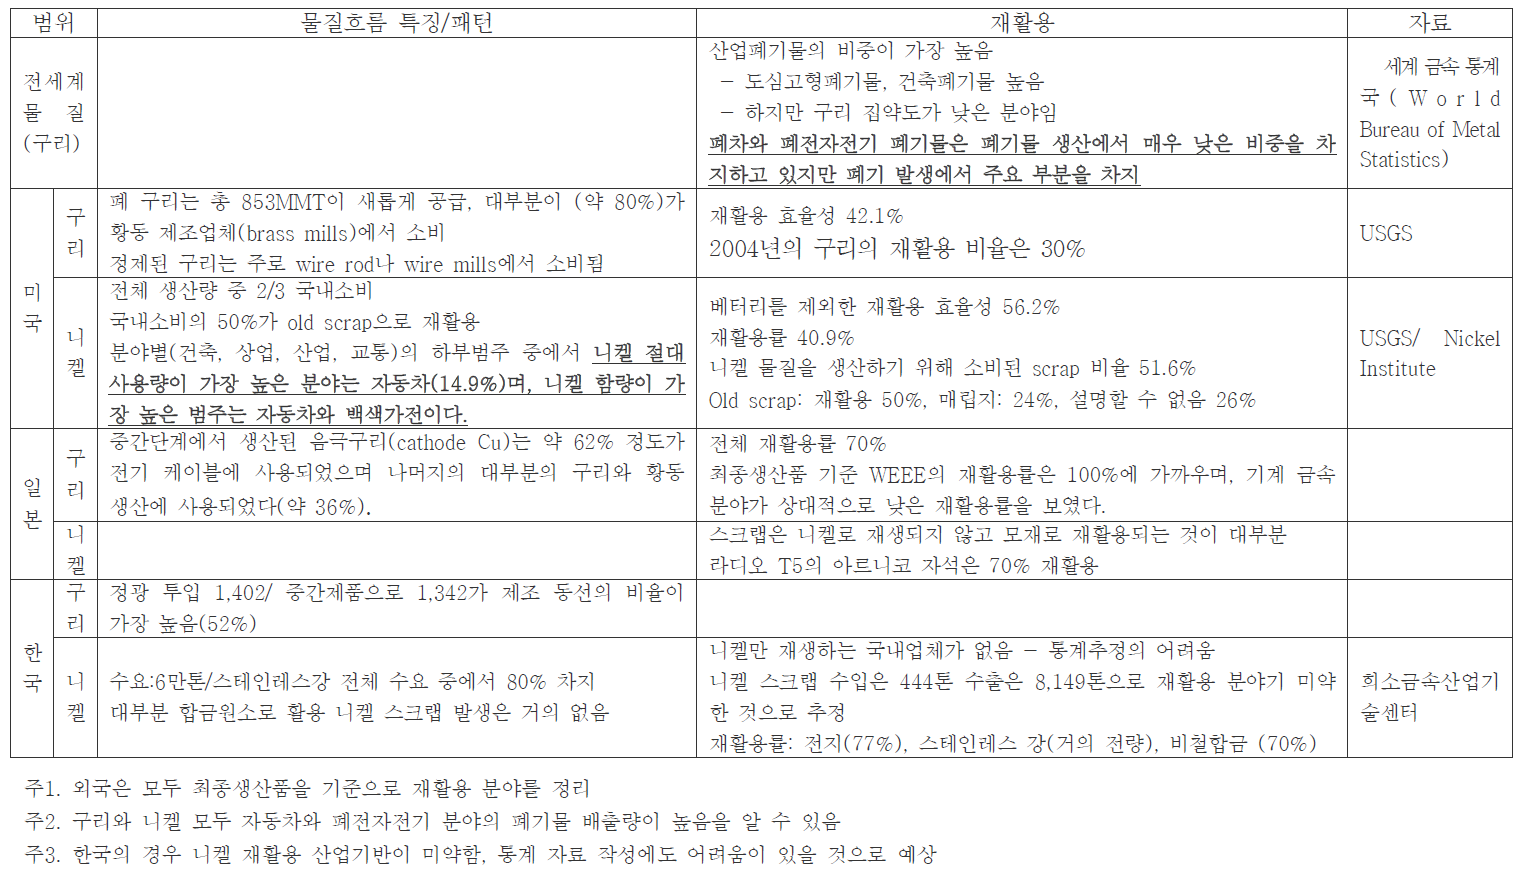 한국 미국 일본의 대상금속별 물질흐름재활용 과정에서의 특징 비교